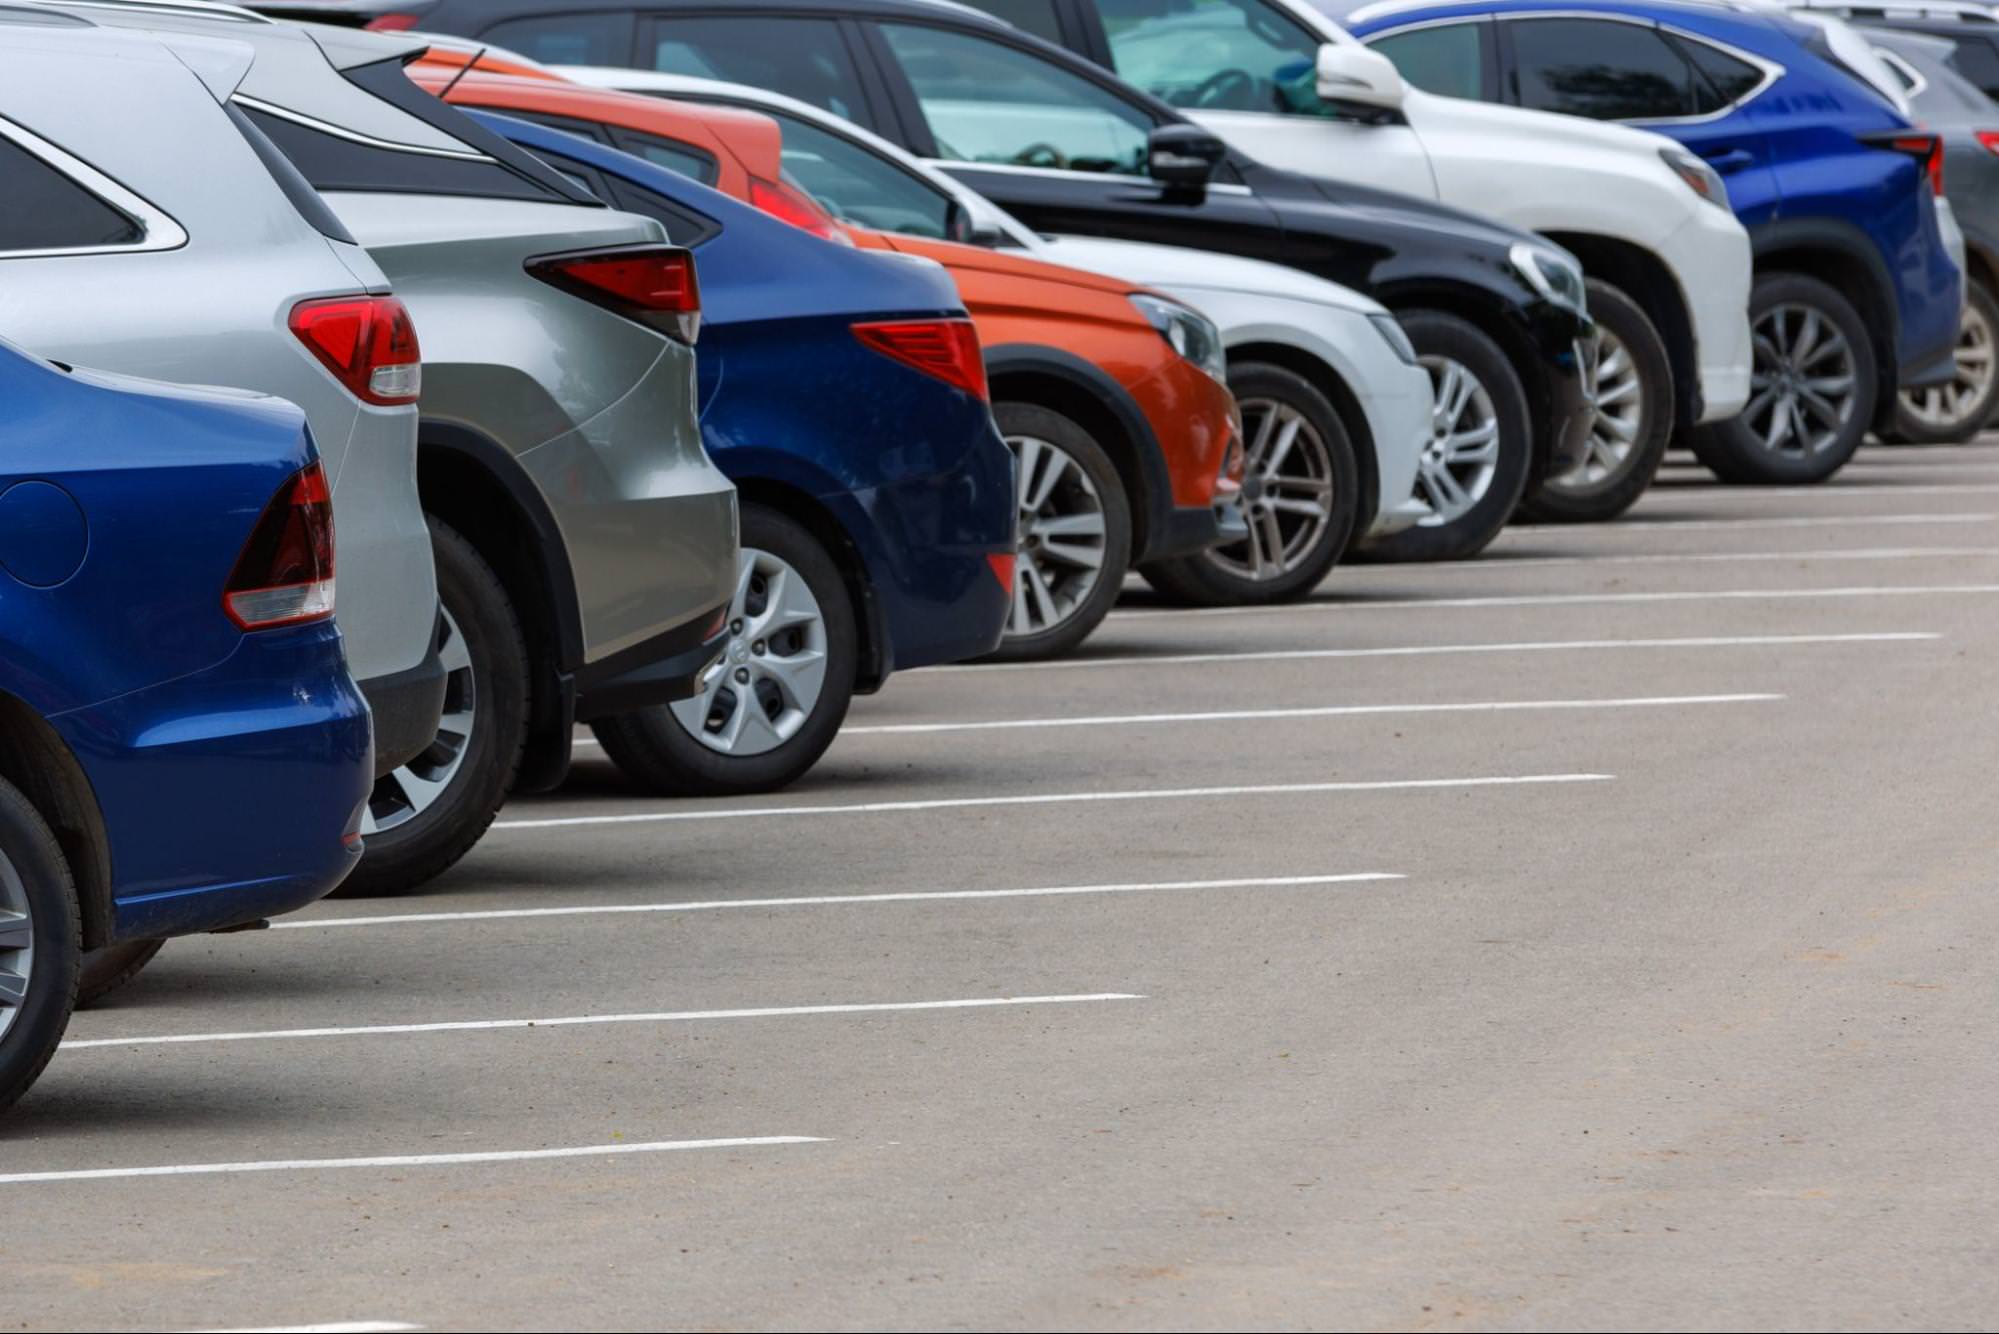 Reihe verschiedenfarbiger Autos auf einem asphaltierten Parkplatz